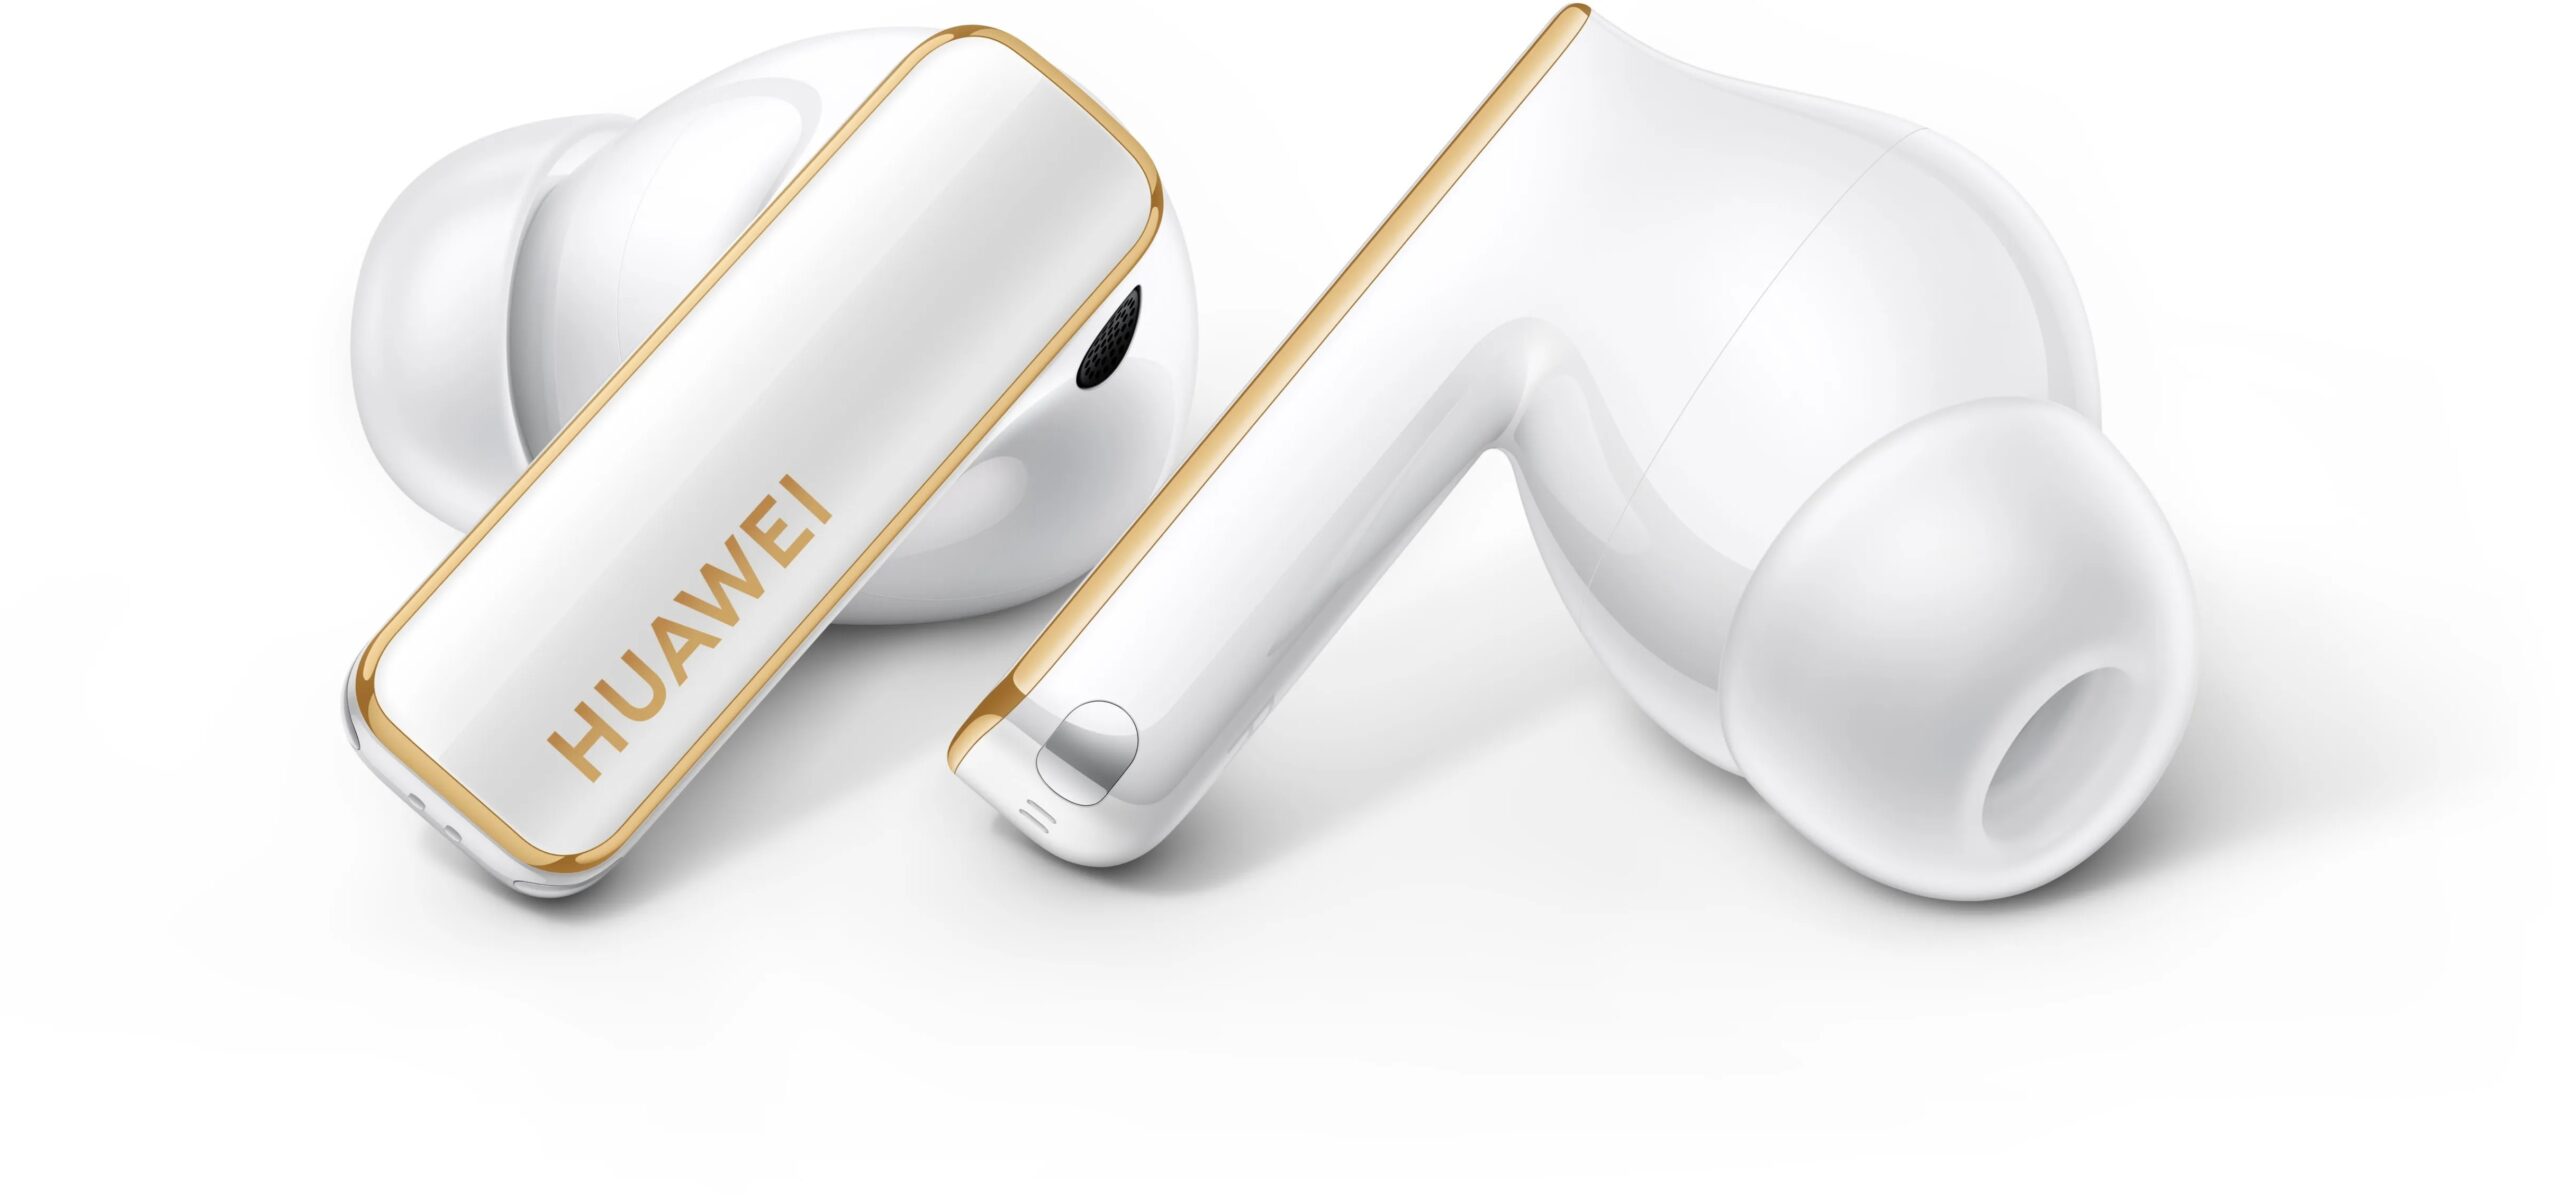 Recensione Huawei FreeBuds 5: gli auricolari con la goccia